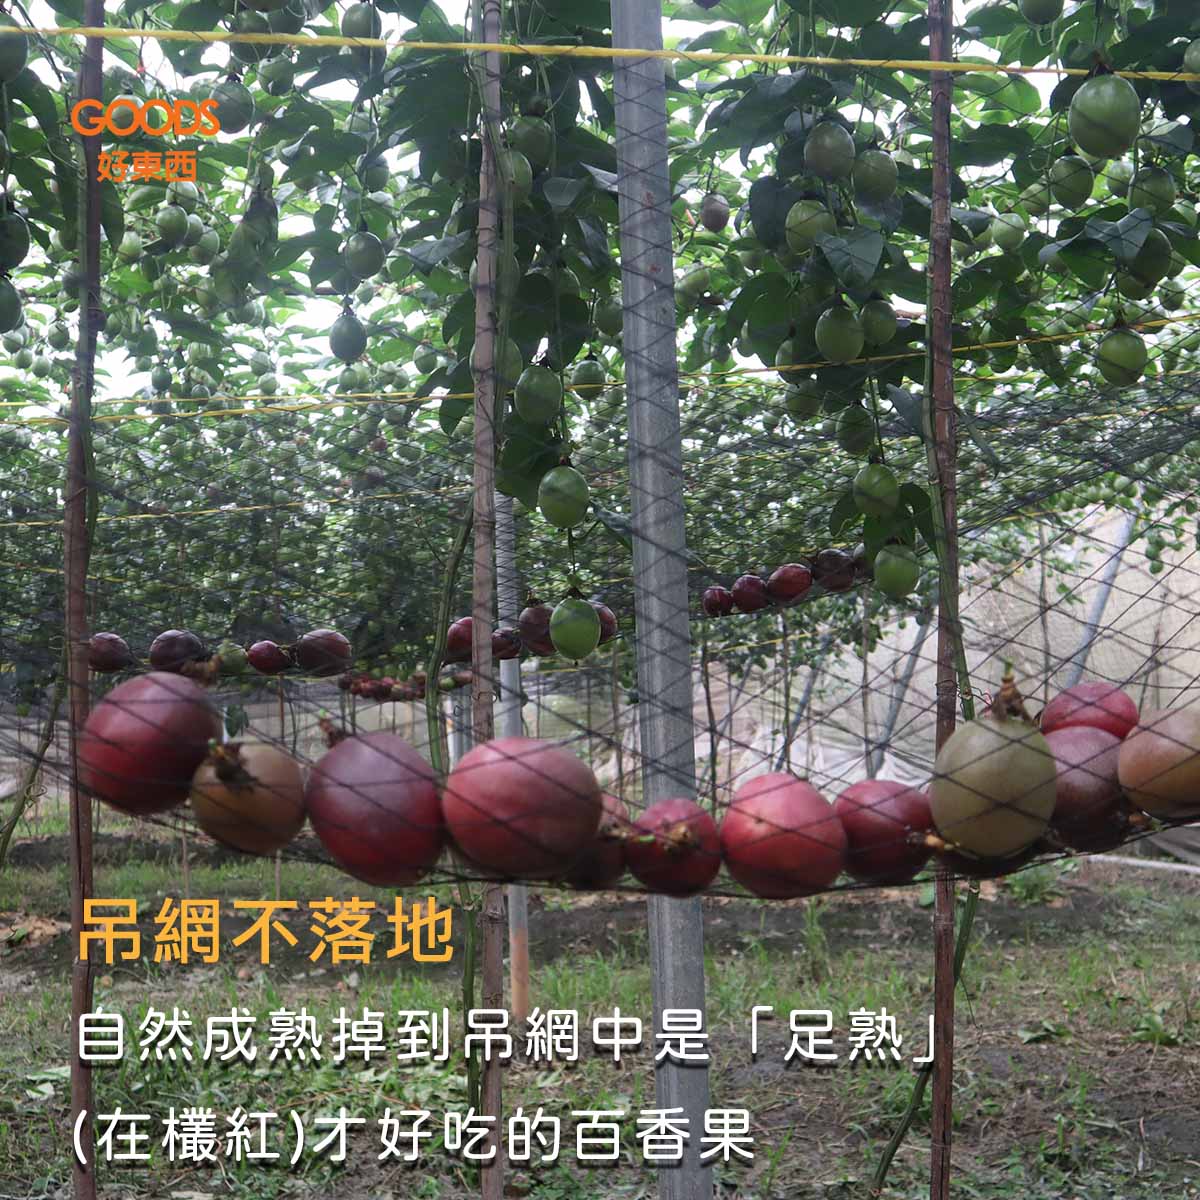 自然成熟掉到吊網中是「足熟」(在欉紅)才好吃的百香果